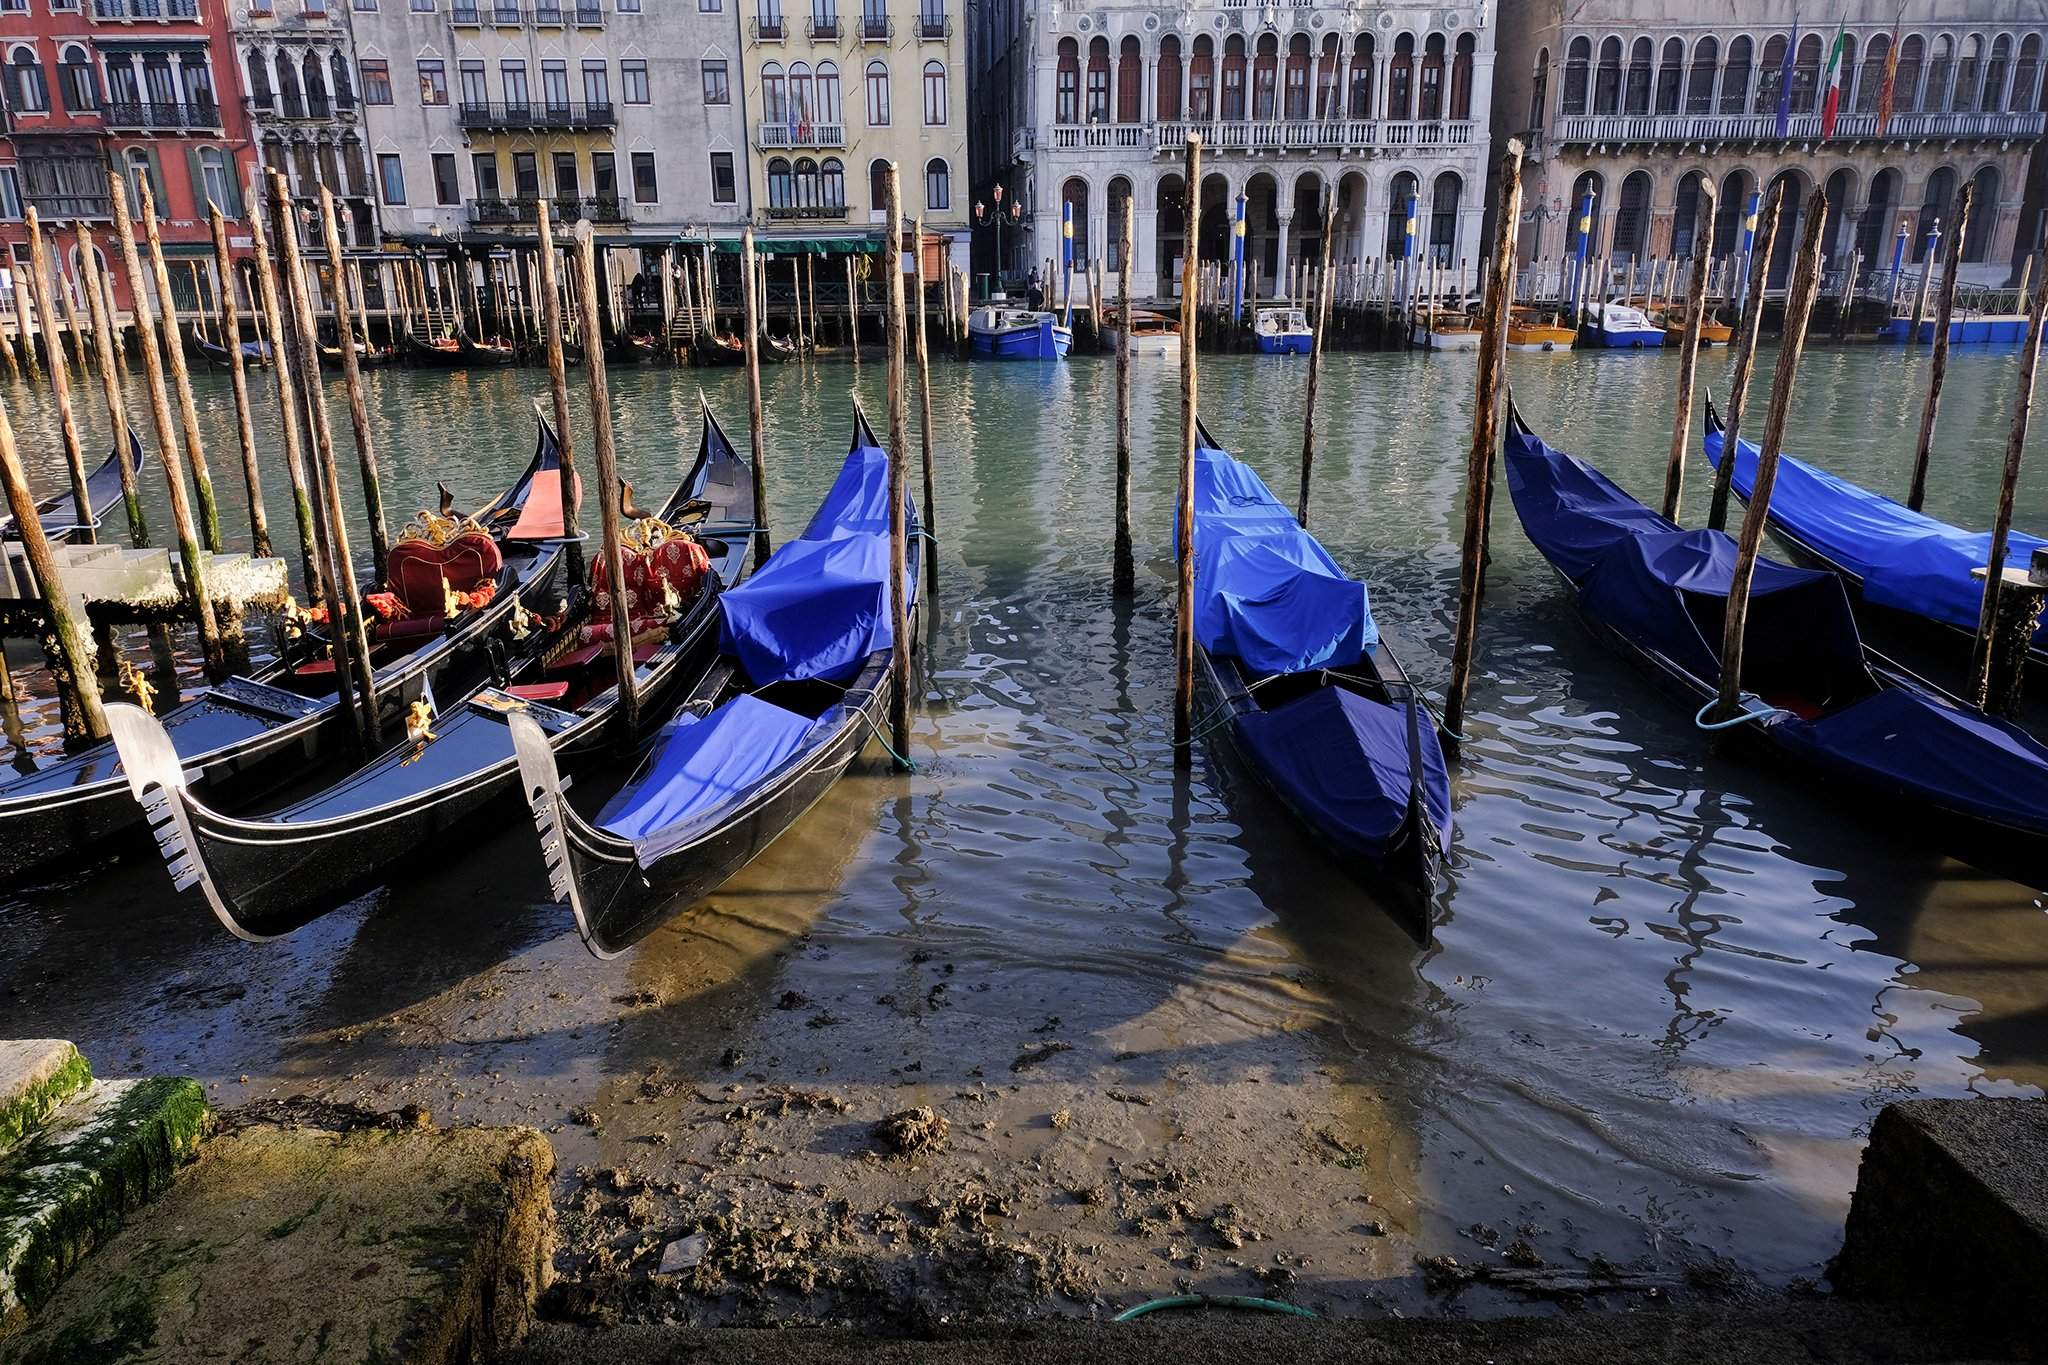 Венеция реальные фото